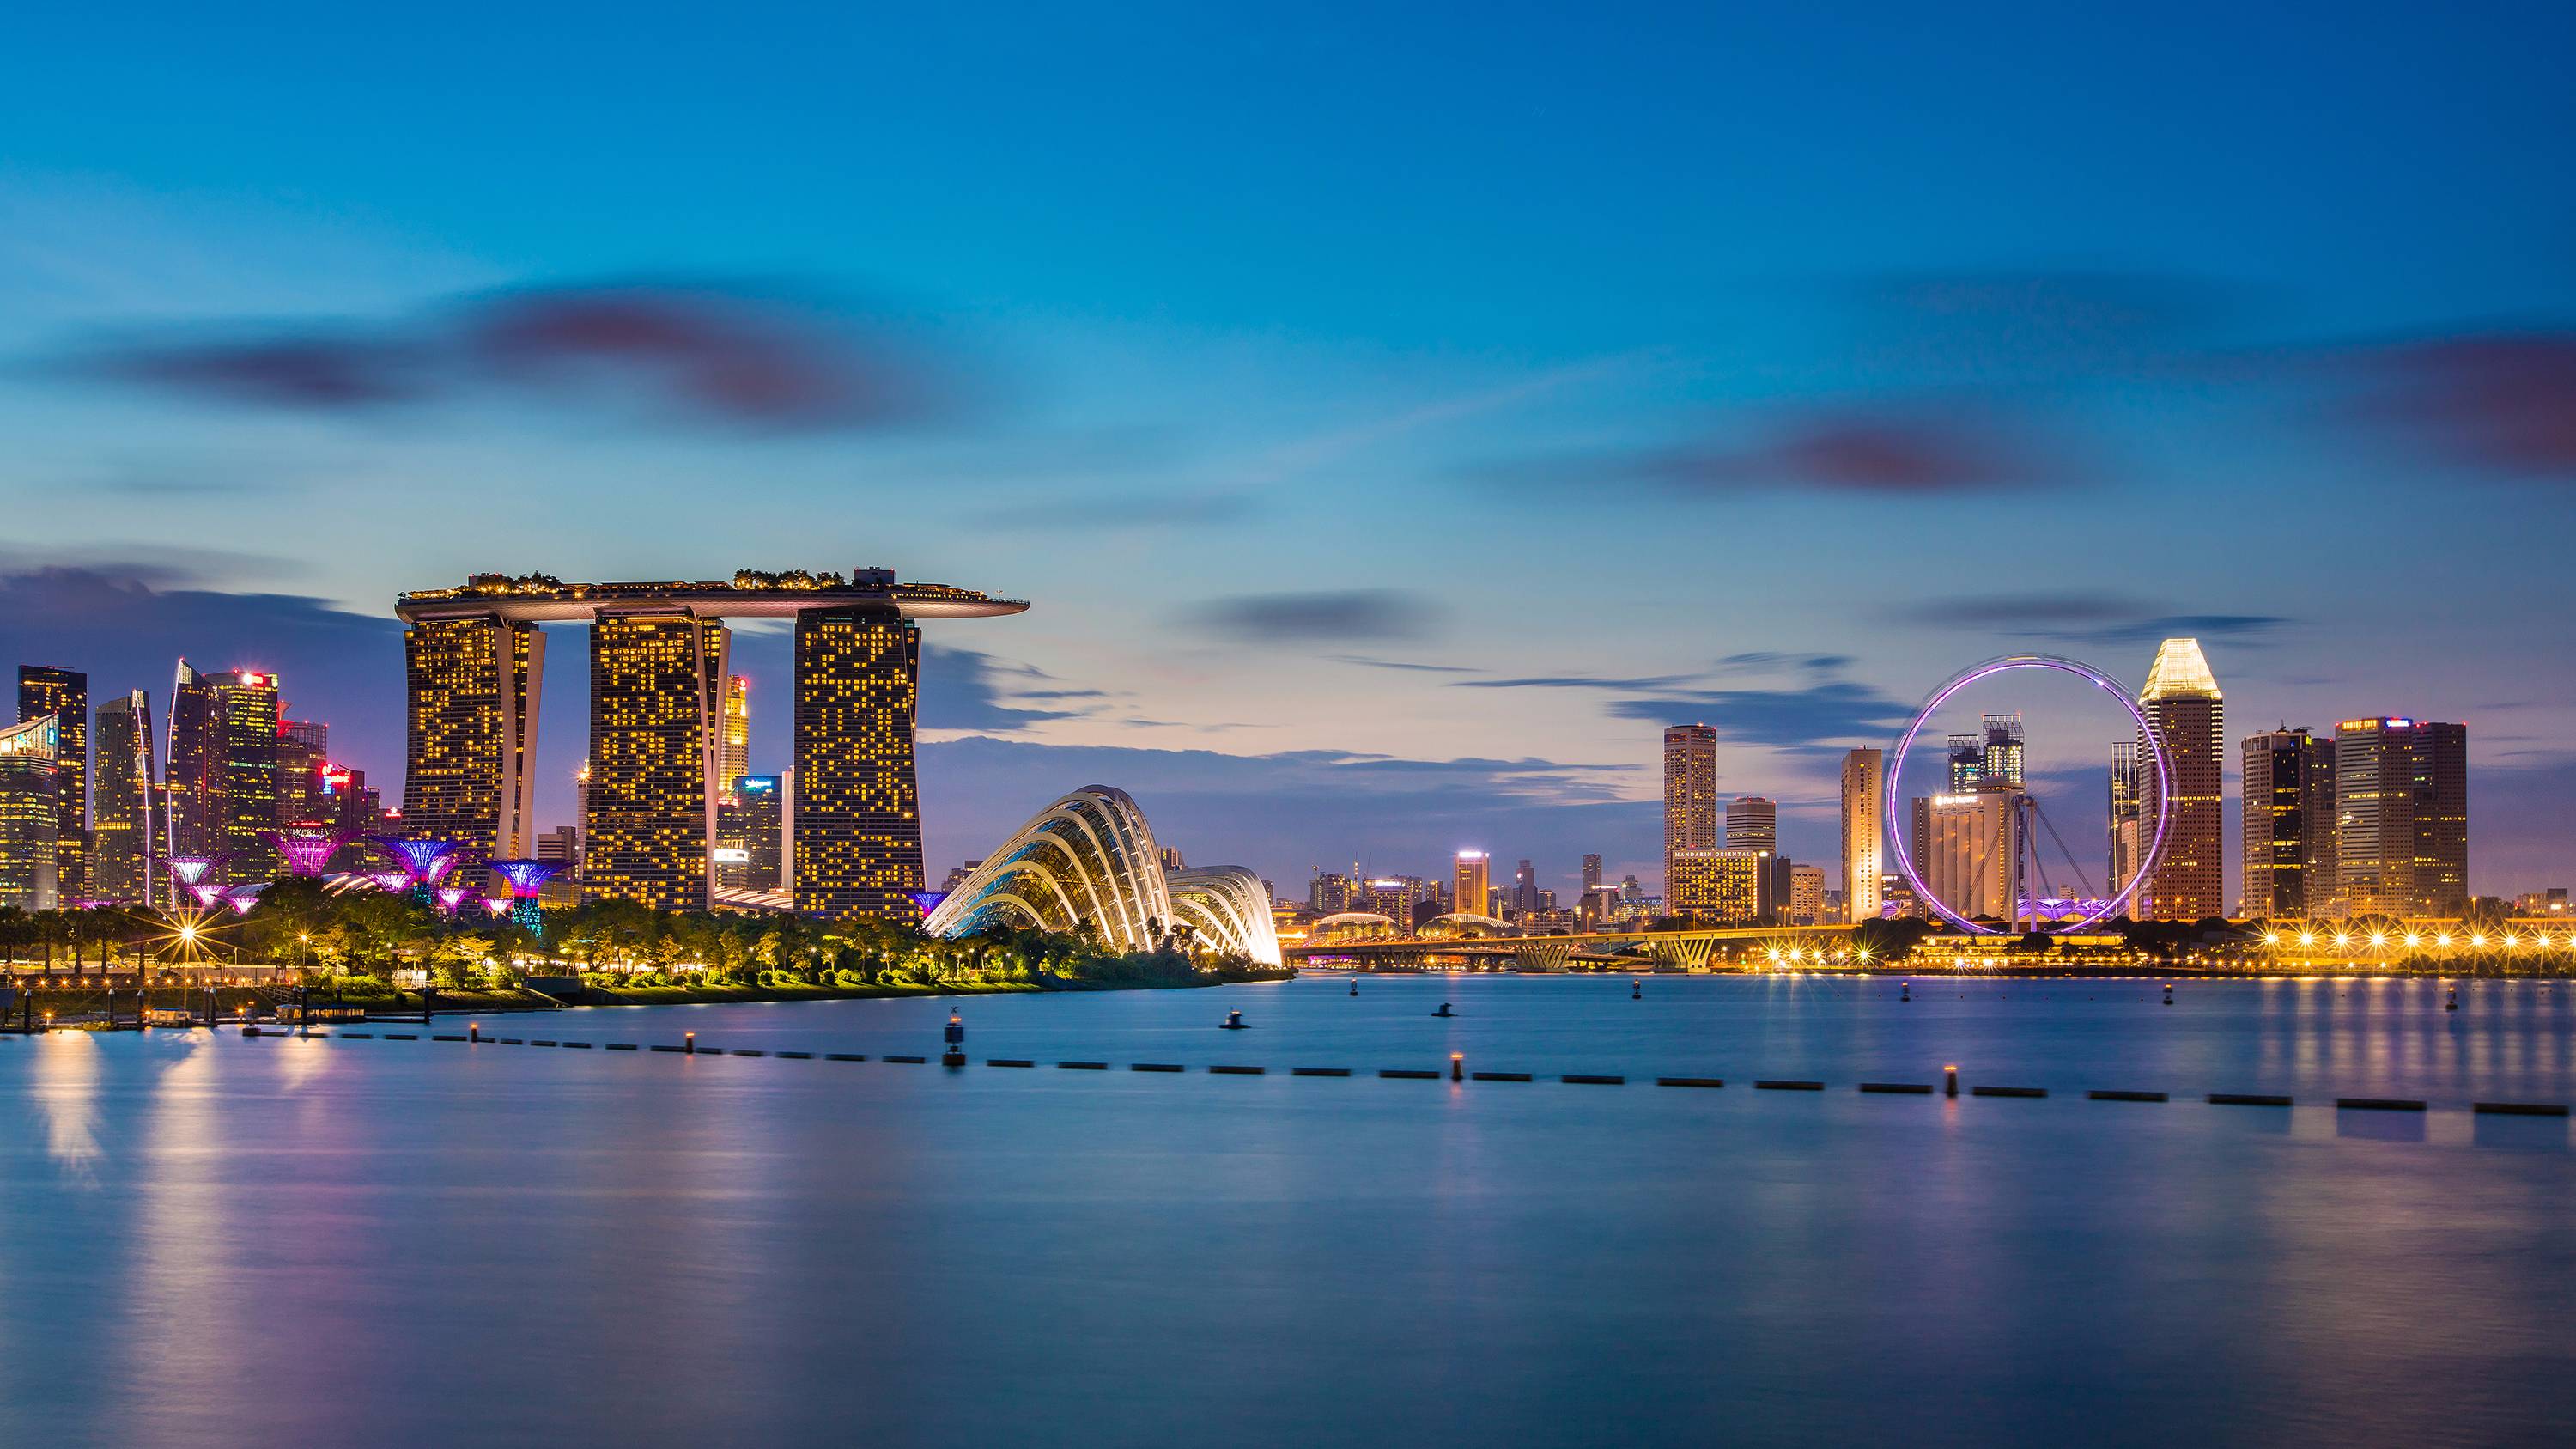  【2020春节】马来西亚 新加坡奢享之旅 吉隆坡-水族馆-云顶 马六甲 新山-新加坡纯玩五天游